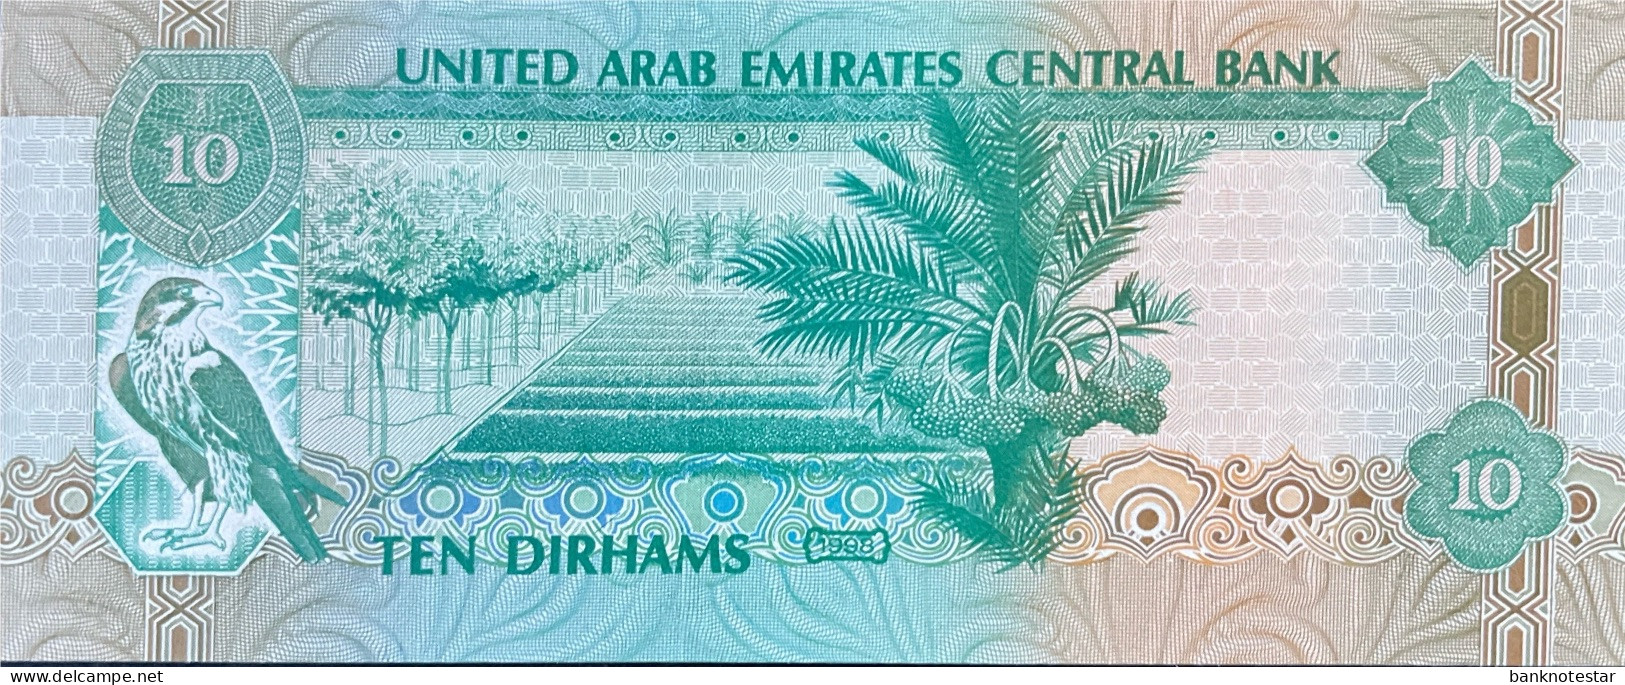 United Arab Emirates 10 Dirhams, P-20a (1998) - UNC - Prefix 01 - Ver. Arab. Emirate